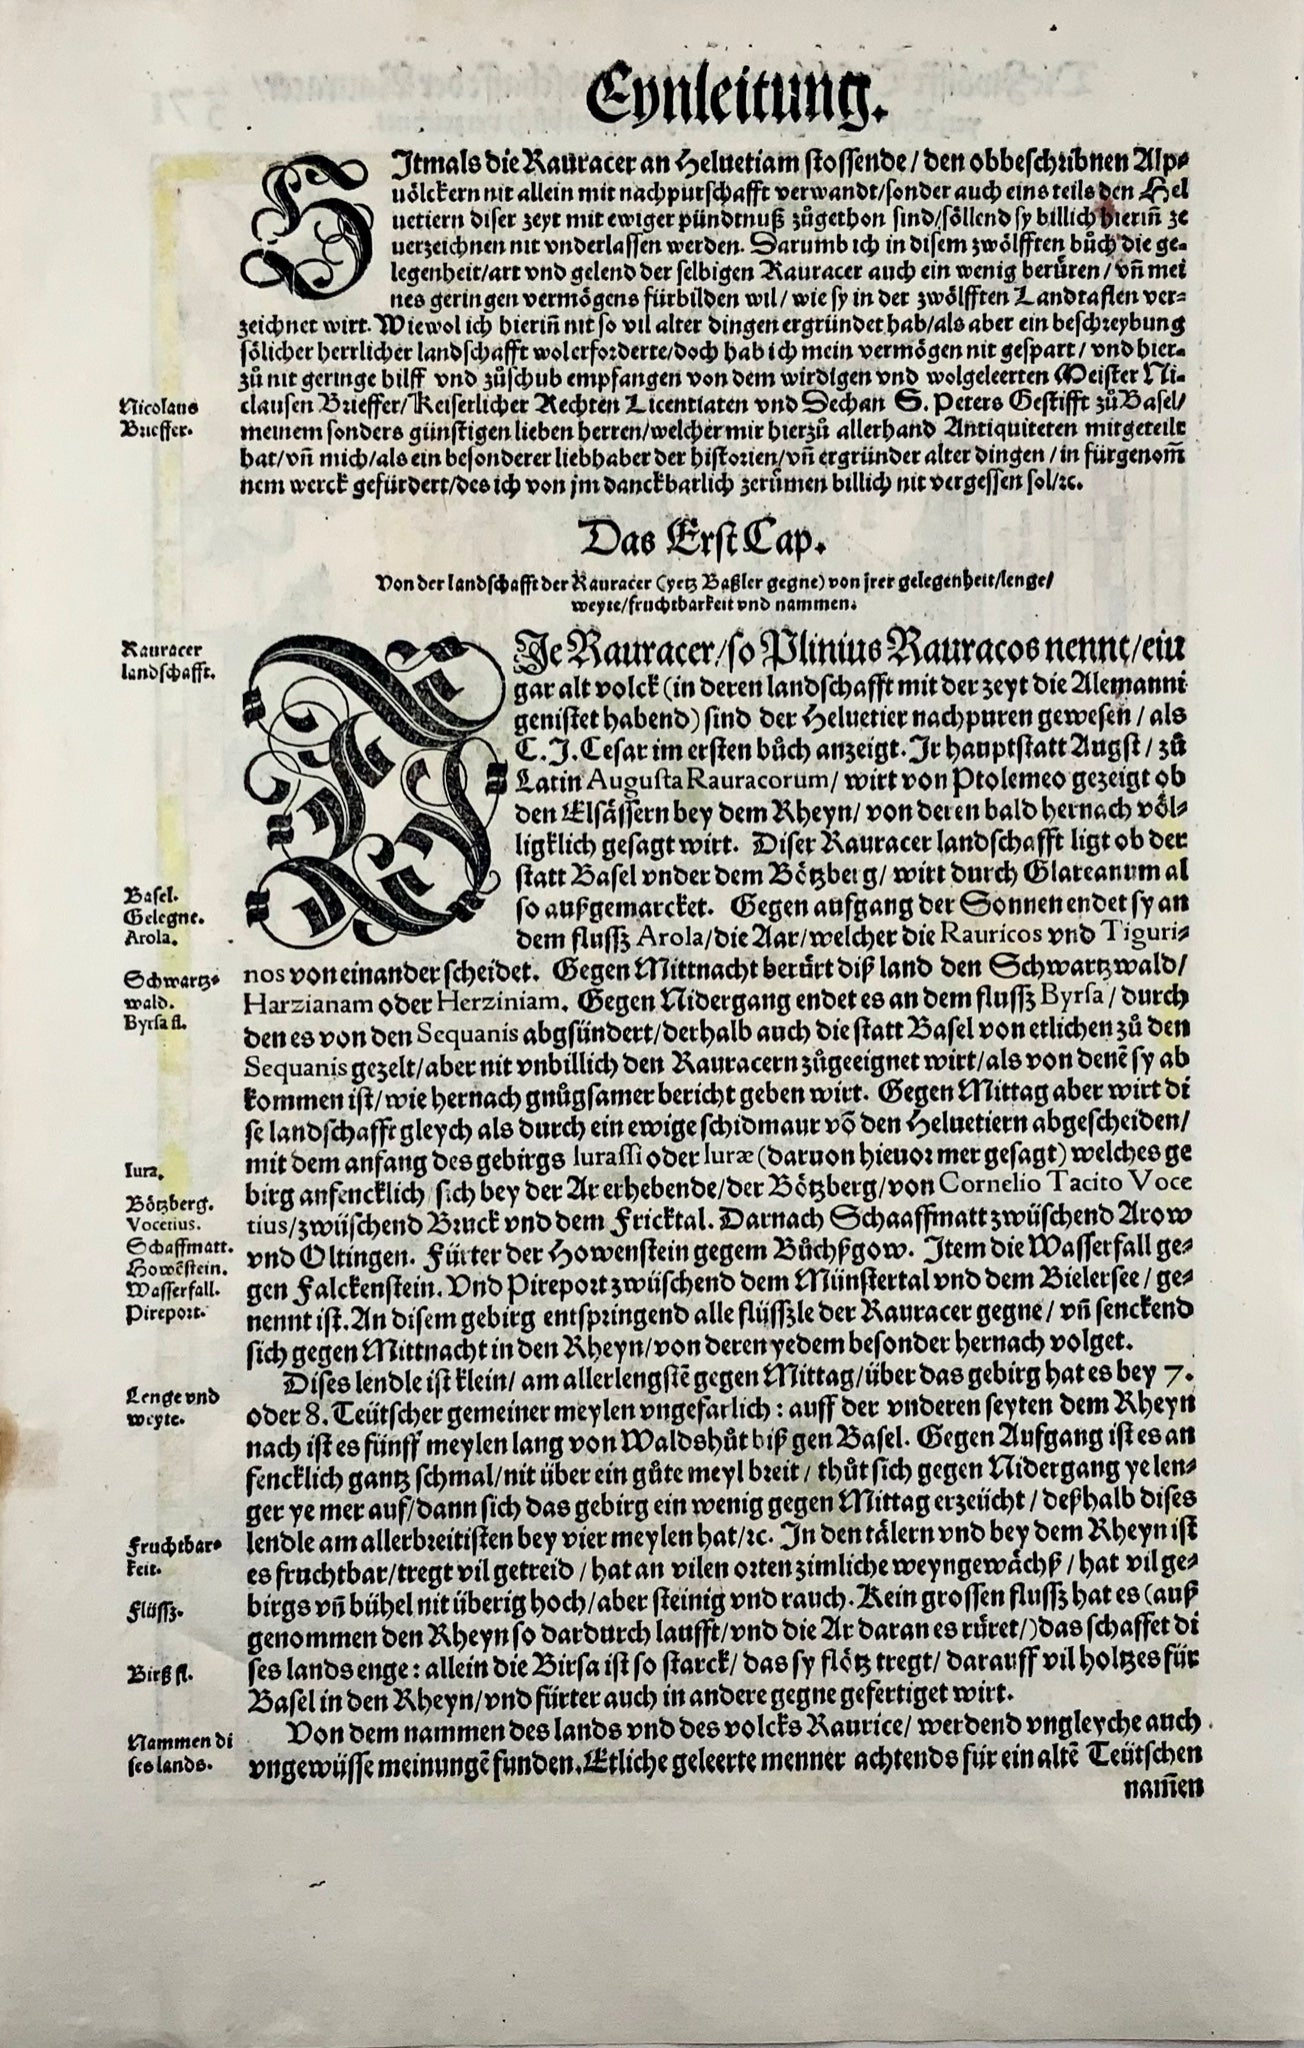 1548 Joh. Stumpf, Rhine, Germany, Switzerland, folio woodcut map